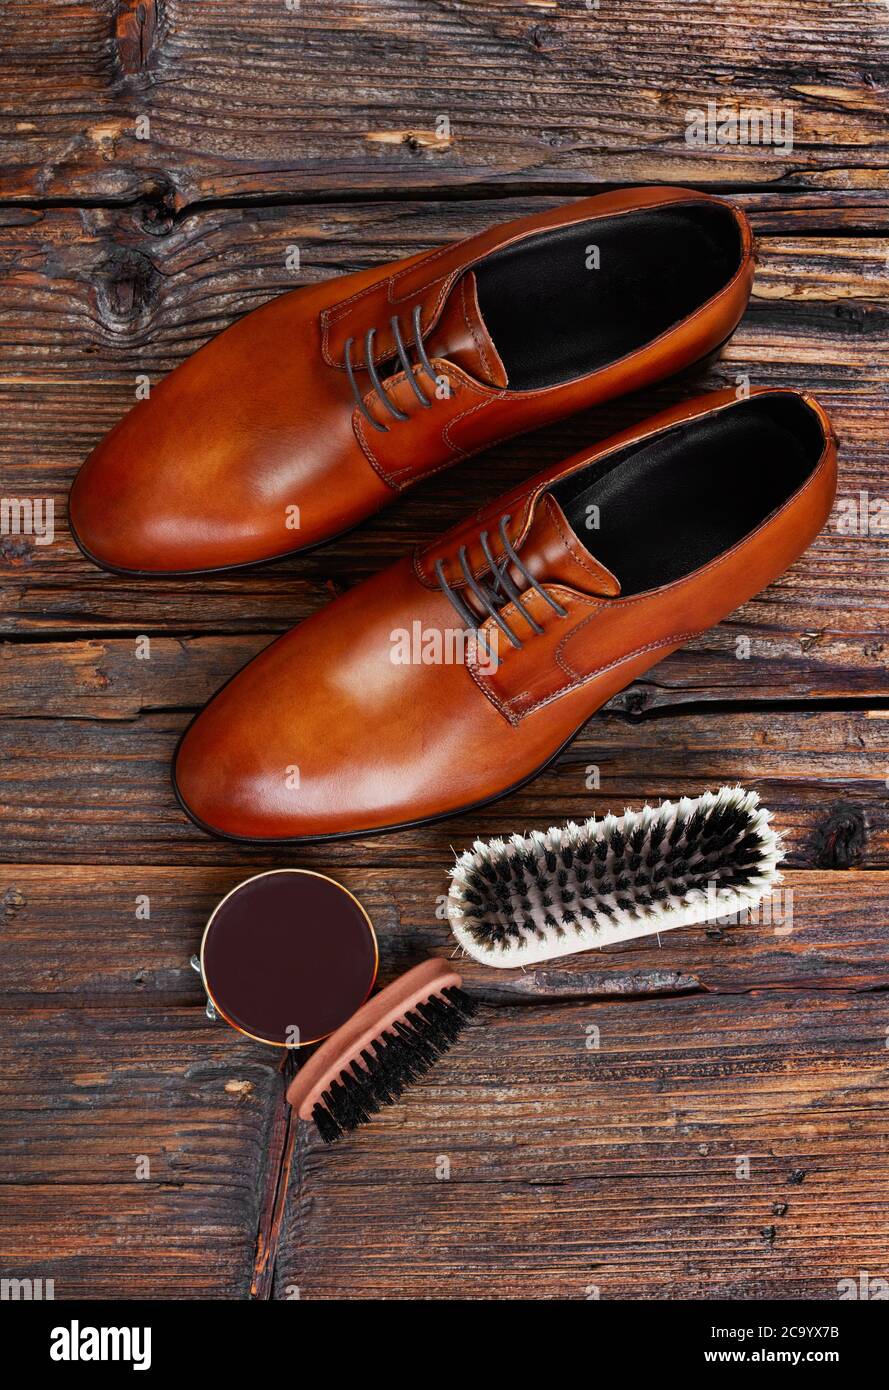 Cepillo de madera Cepillo de zapatos vintage Cepillo de zapatos retro Cepillo de zapatos antiguo Cuidado del zapato Zapatos Plantillas y accesorios Cuidado y limpieza del calzado Decoración del zapatero 